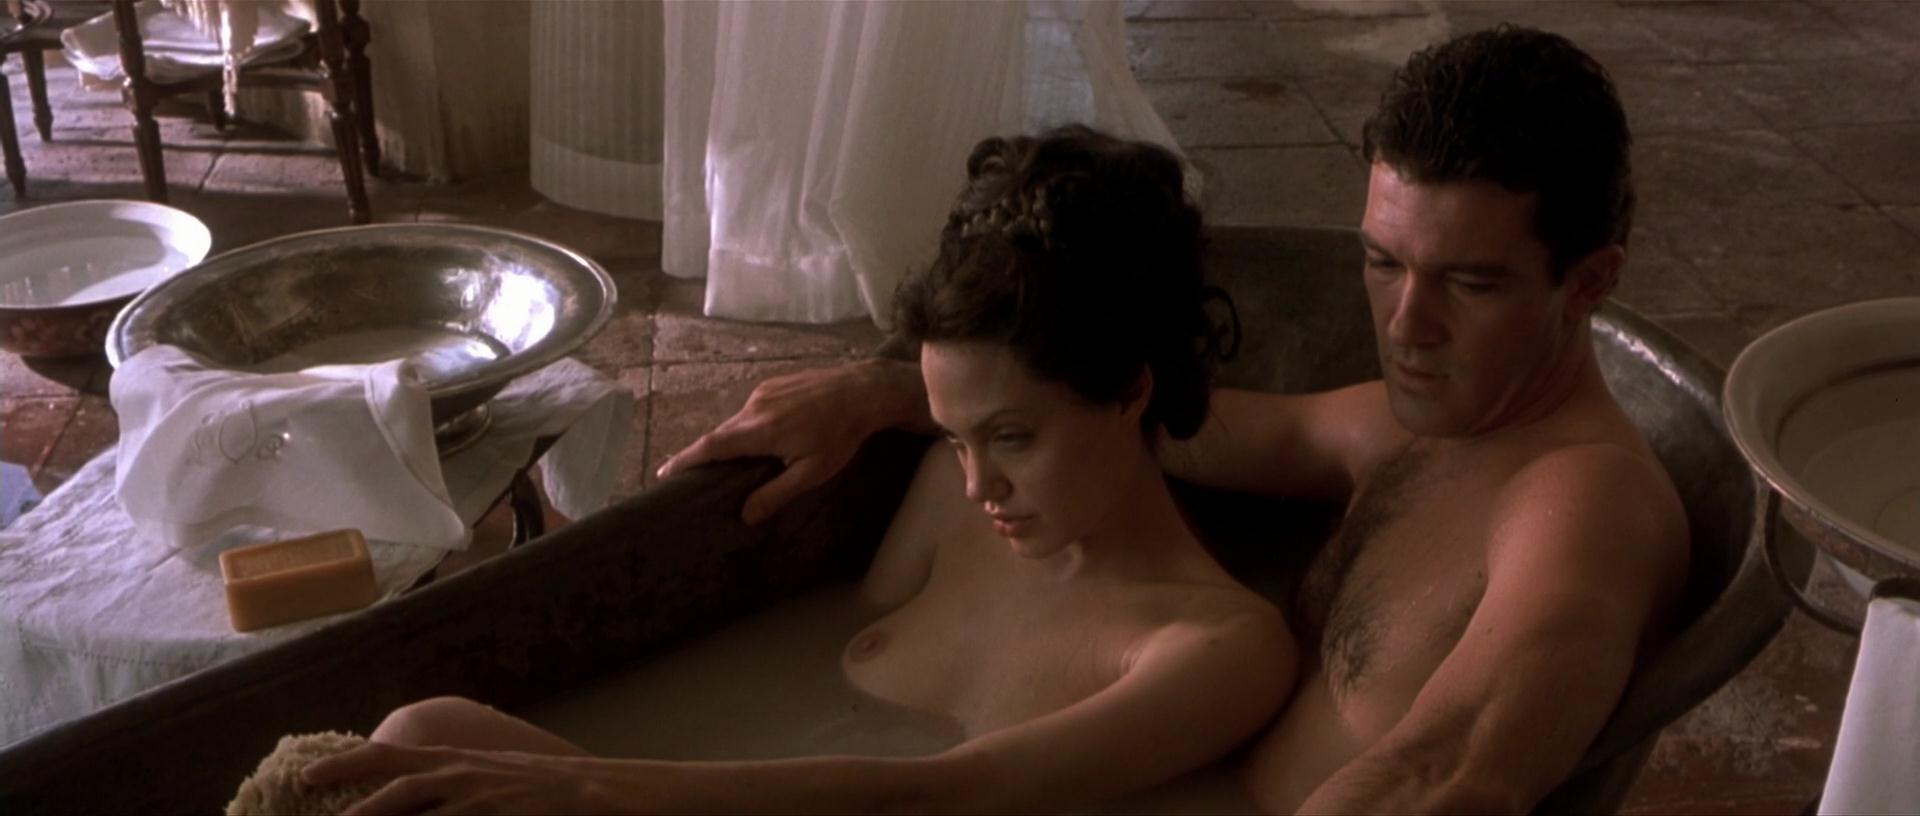 Angelina jolie hot sex scenes